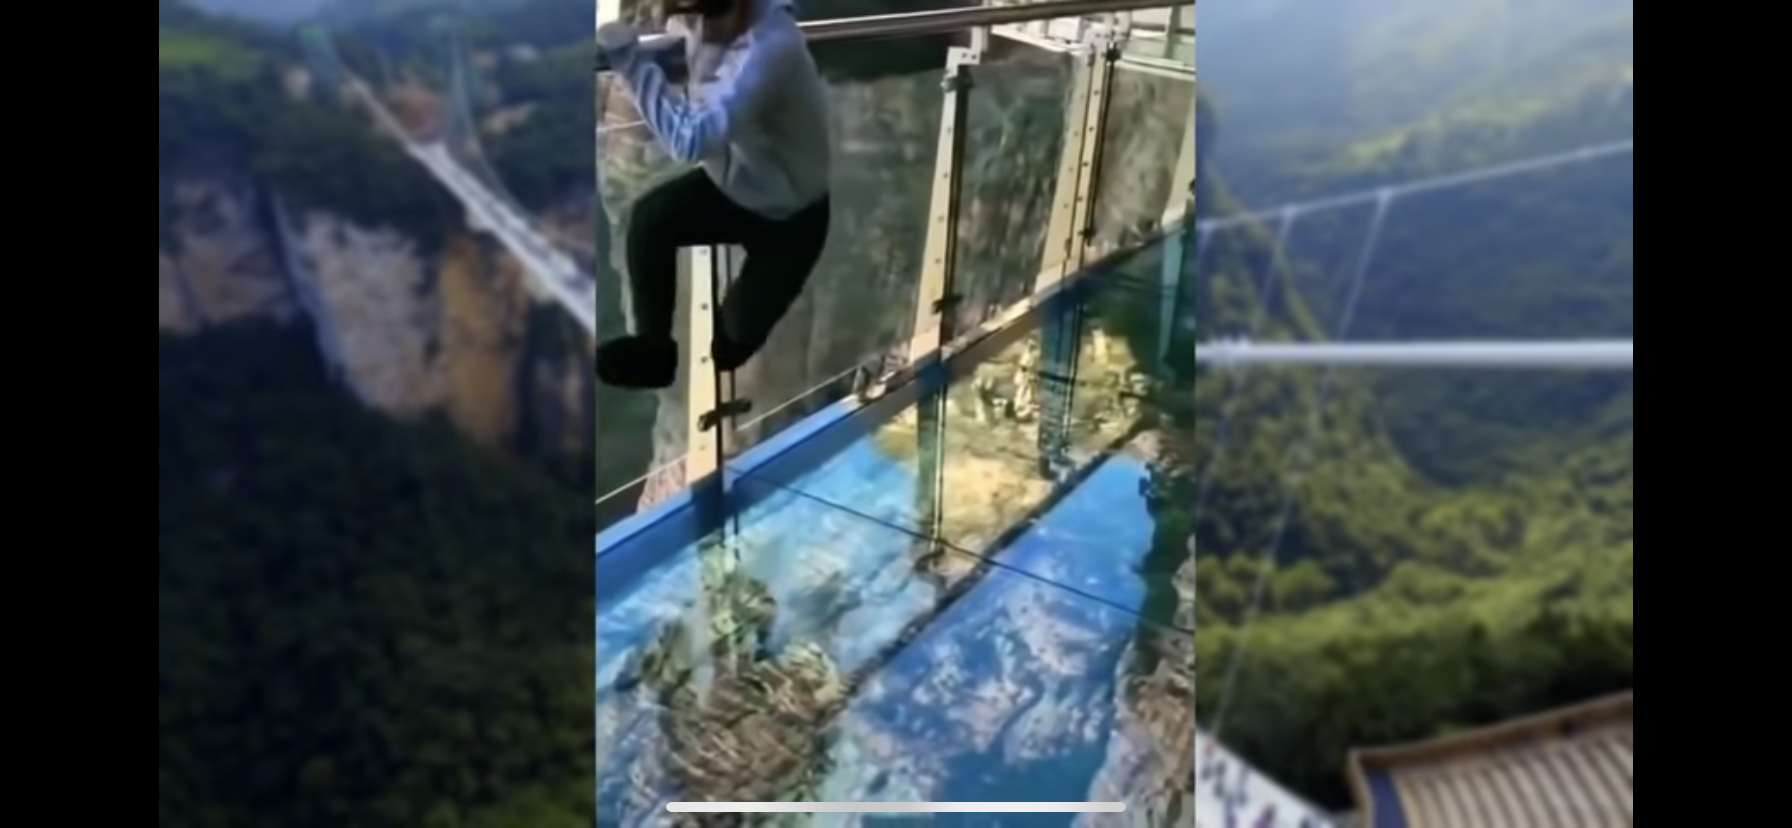 بالفيديو :مقلب الجسر الزجاجي في الصين الذي ينكسر خلال المشي عليه 